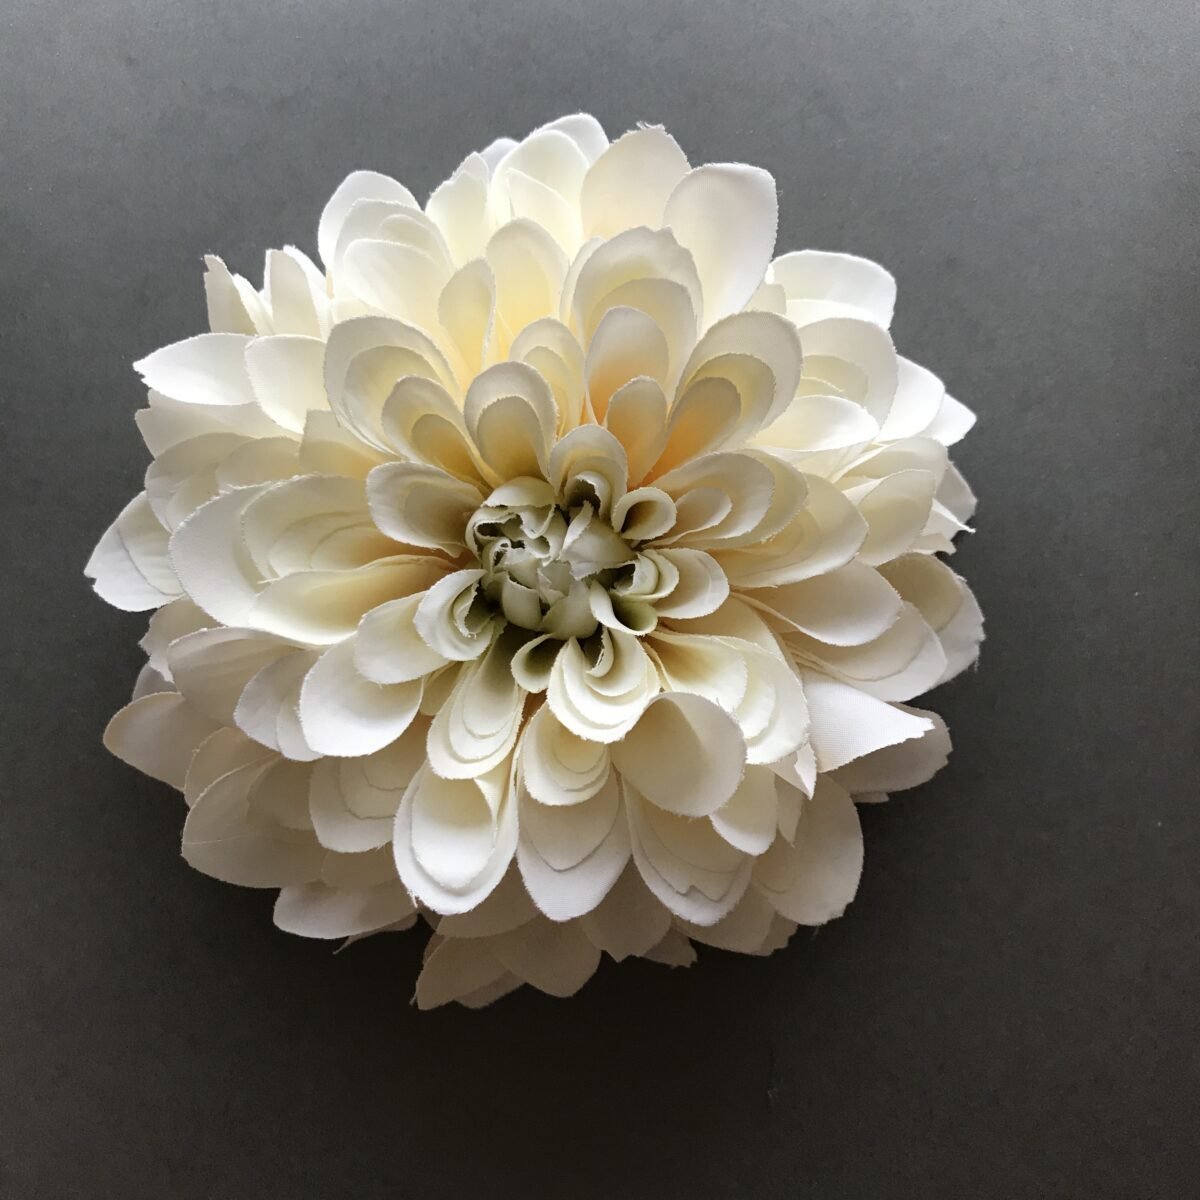 White Lace Dahlia Dev Yıldız Çiçeği Yumrusu (1 Adet)